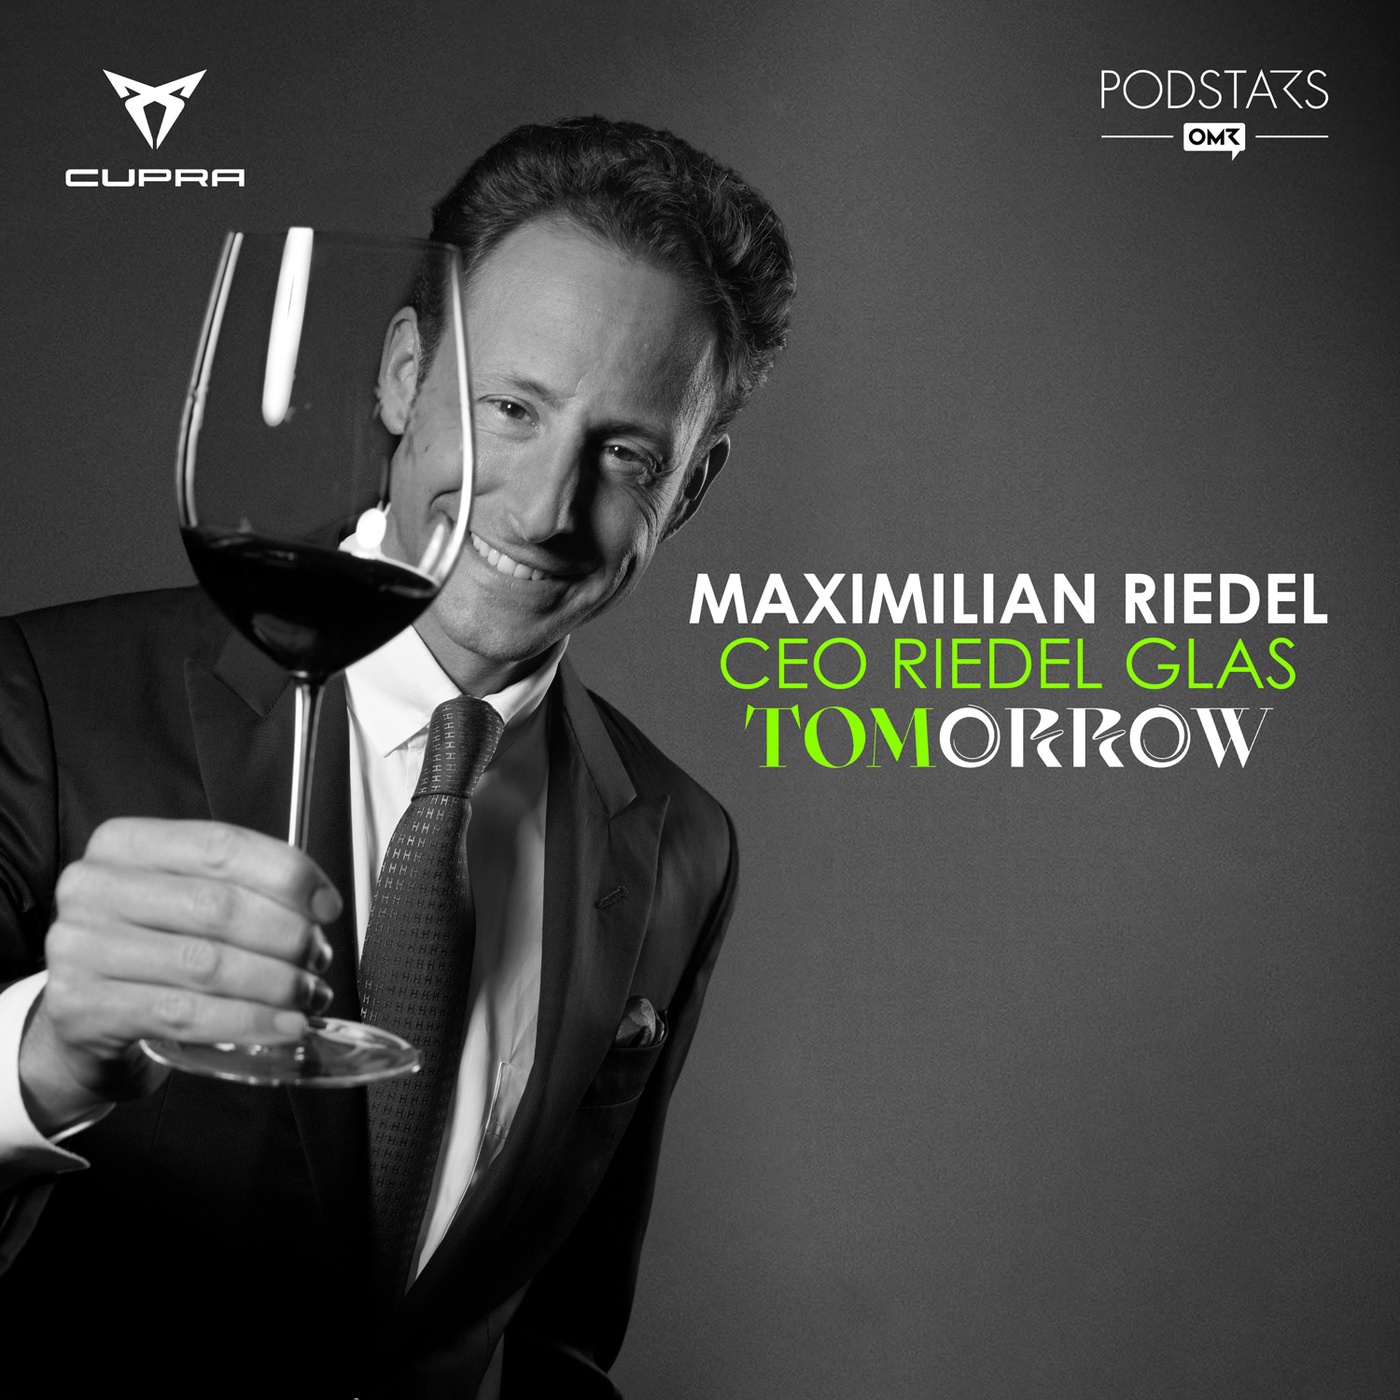 Die wichtigsten Wein-Trends und das perfekte Glas dazu – mit Maximilian Riedel, CEO Riedel Glas